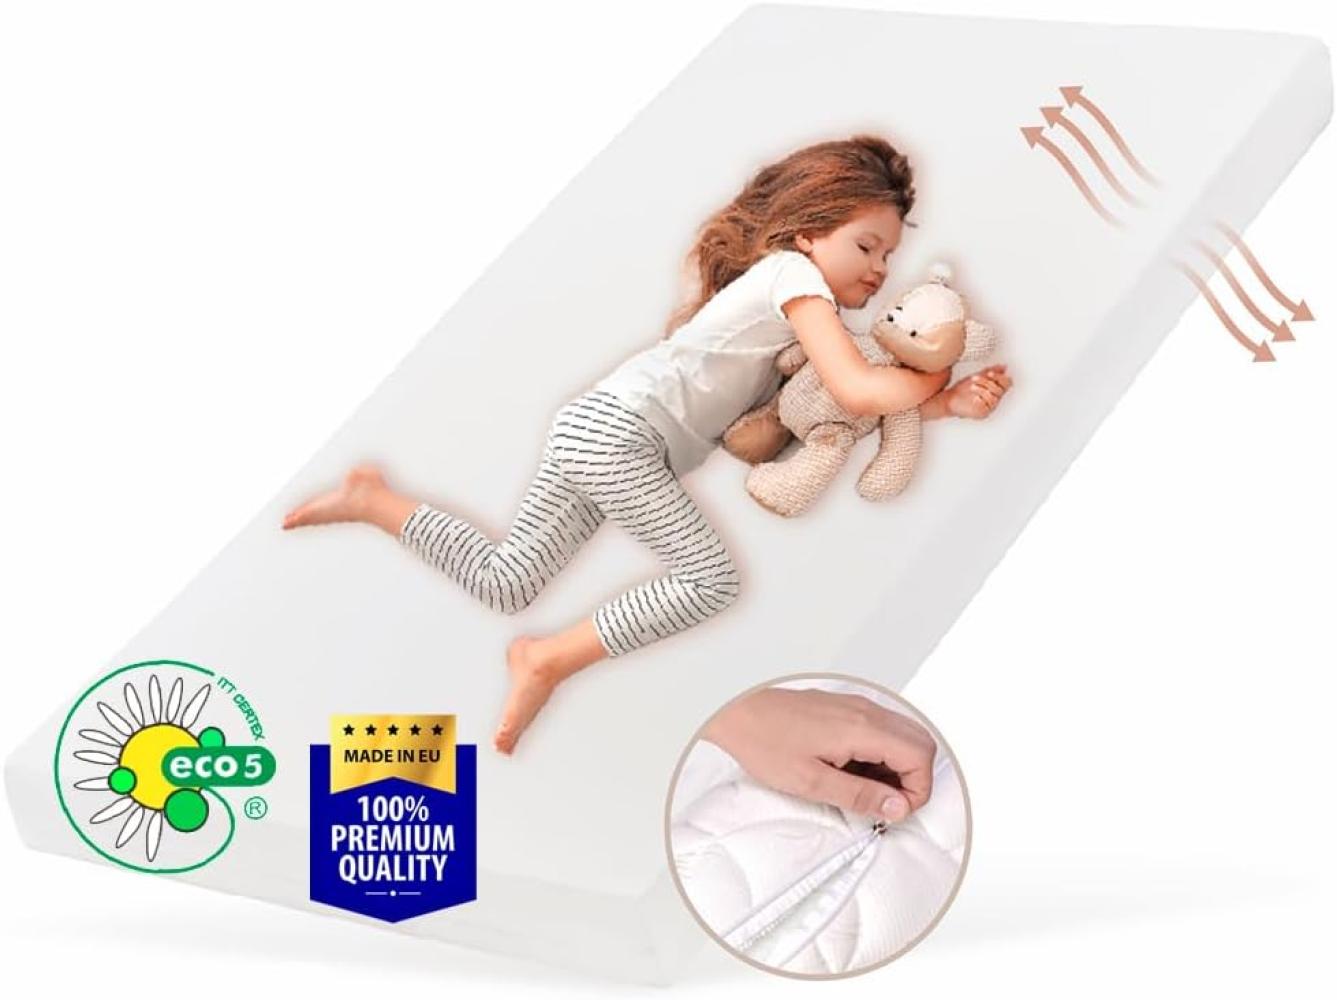 Kids Collective Kindermatratze SMART, Babymatratze 80x160 cm mit abnehmbarem Bezug, waschbar bei 60°C für Kinderbett, 160x80 cm, 8cm hoch, eco5 Zertifiziert Bild 1